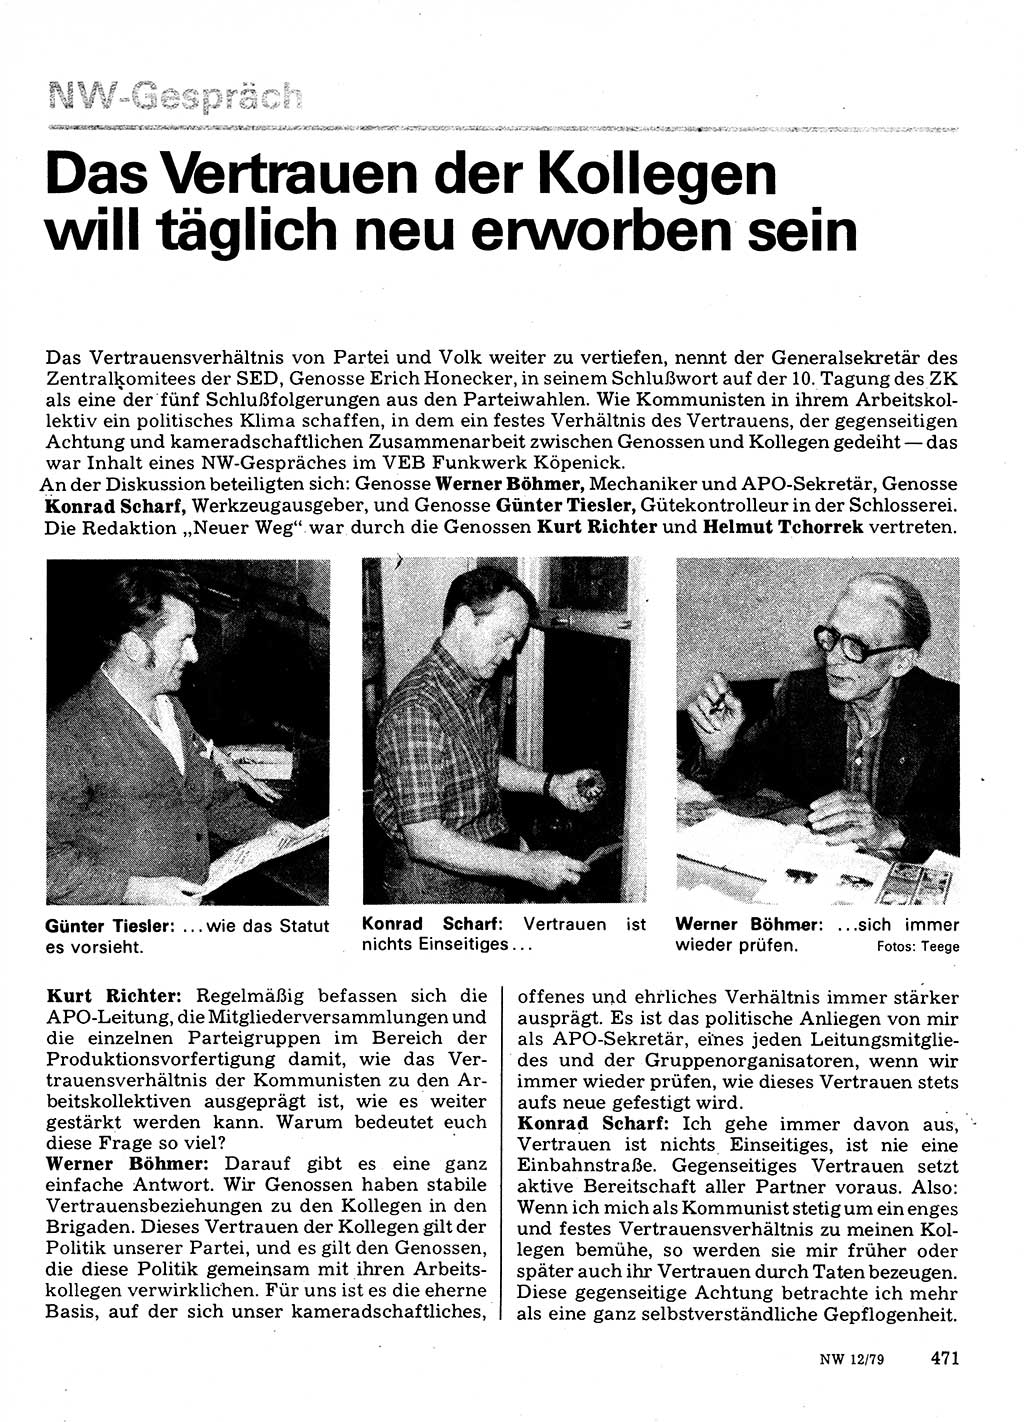 Neuer Weg (NW), Organ des Zentralkomitees (ZK) der SED (Sozialistische Einheitspartei Deutschlands) für Fragen des Parteilebens, 34. Jahrgang [Deutsche Demokratische Republik (DDR)] 1979, Seite 471 (NW ZK SED DDR 1979, S. 471)